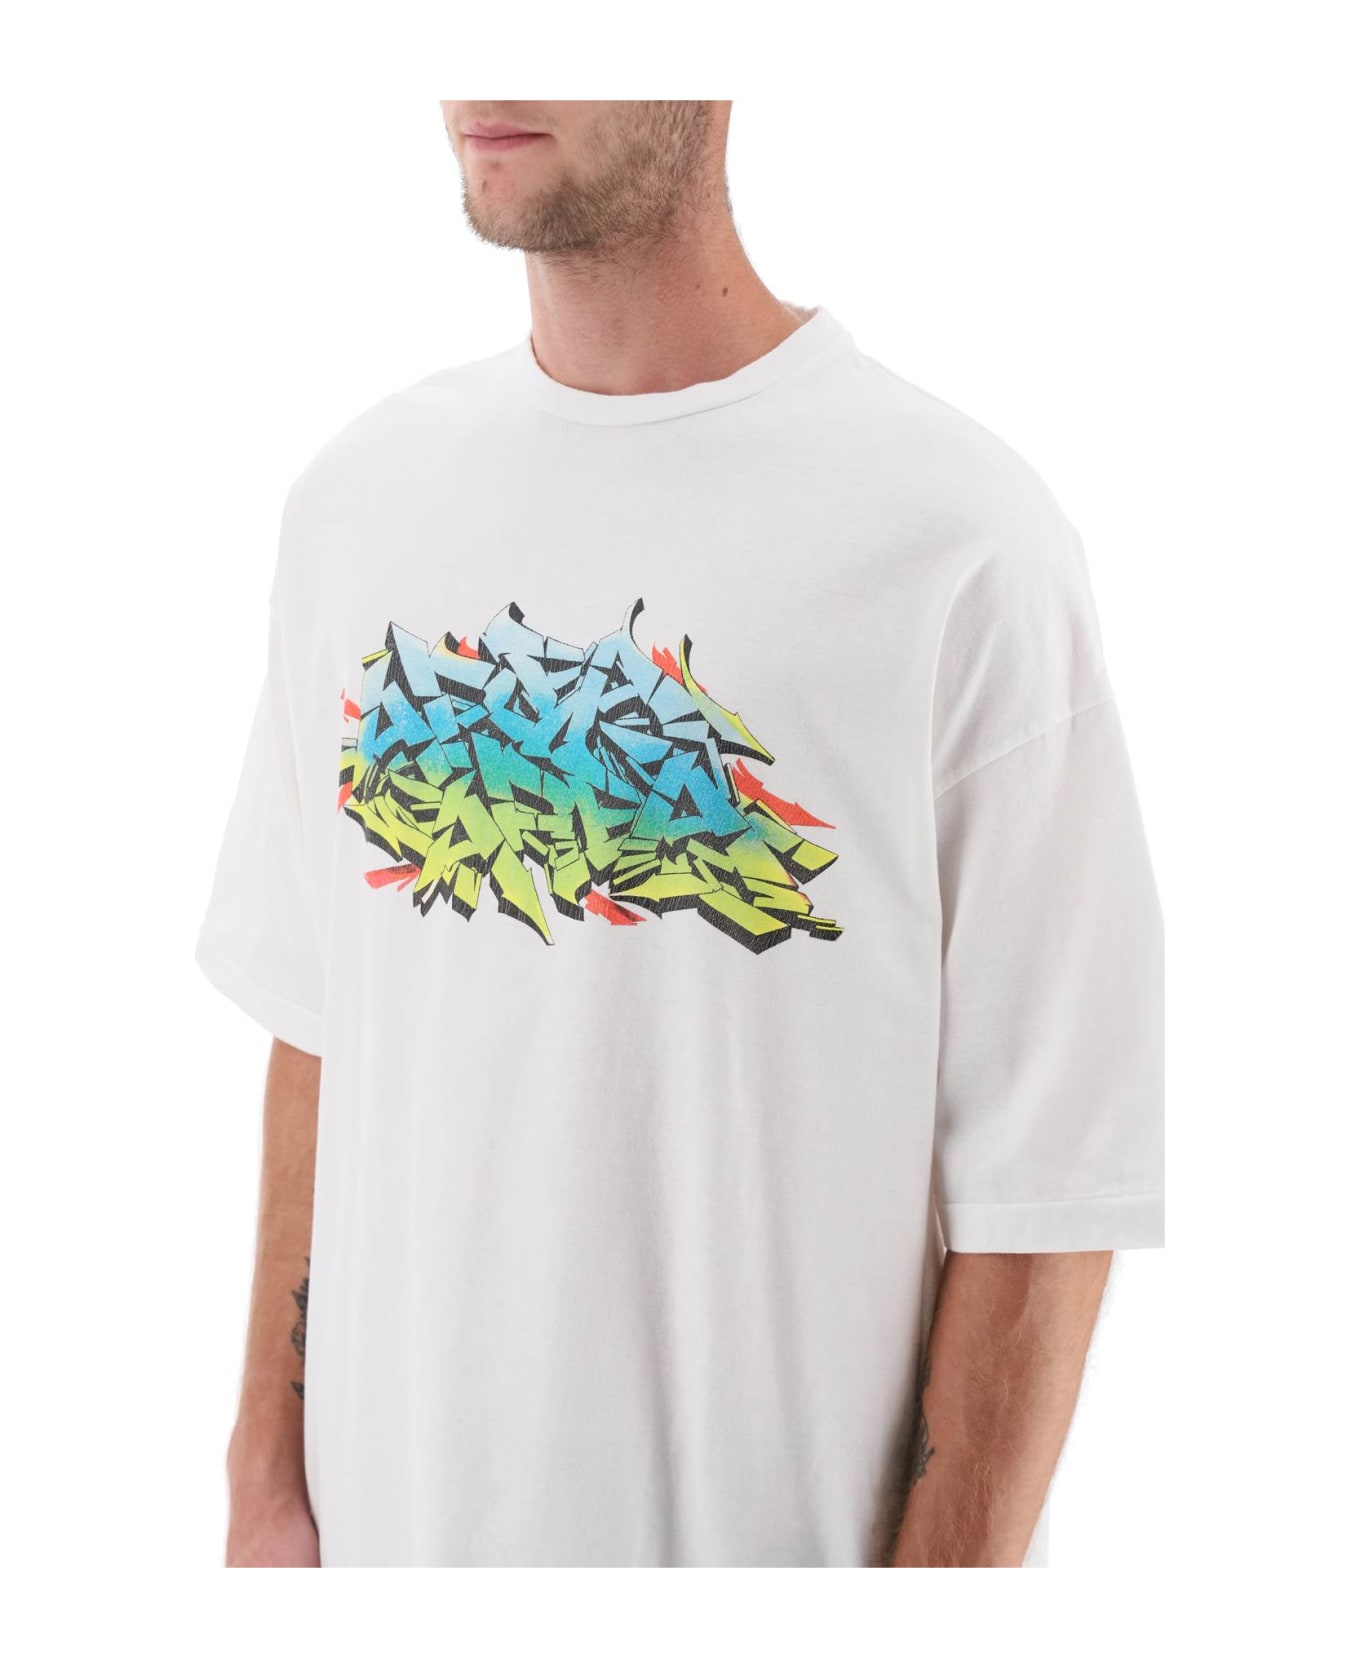 Children of the Discordance Graffiti Print T-shirt - AREA WHT (White)